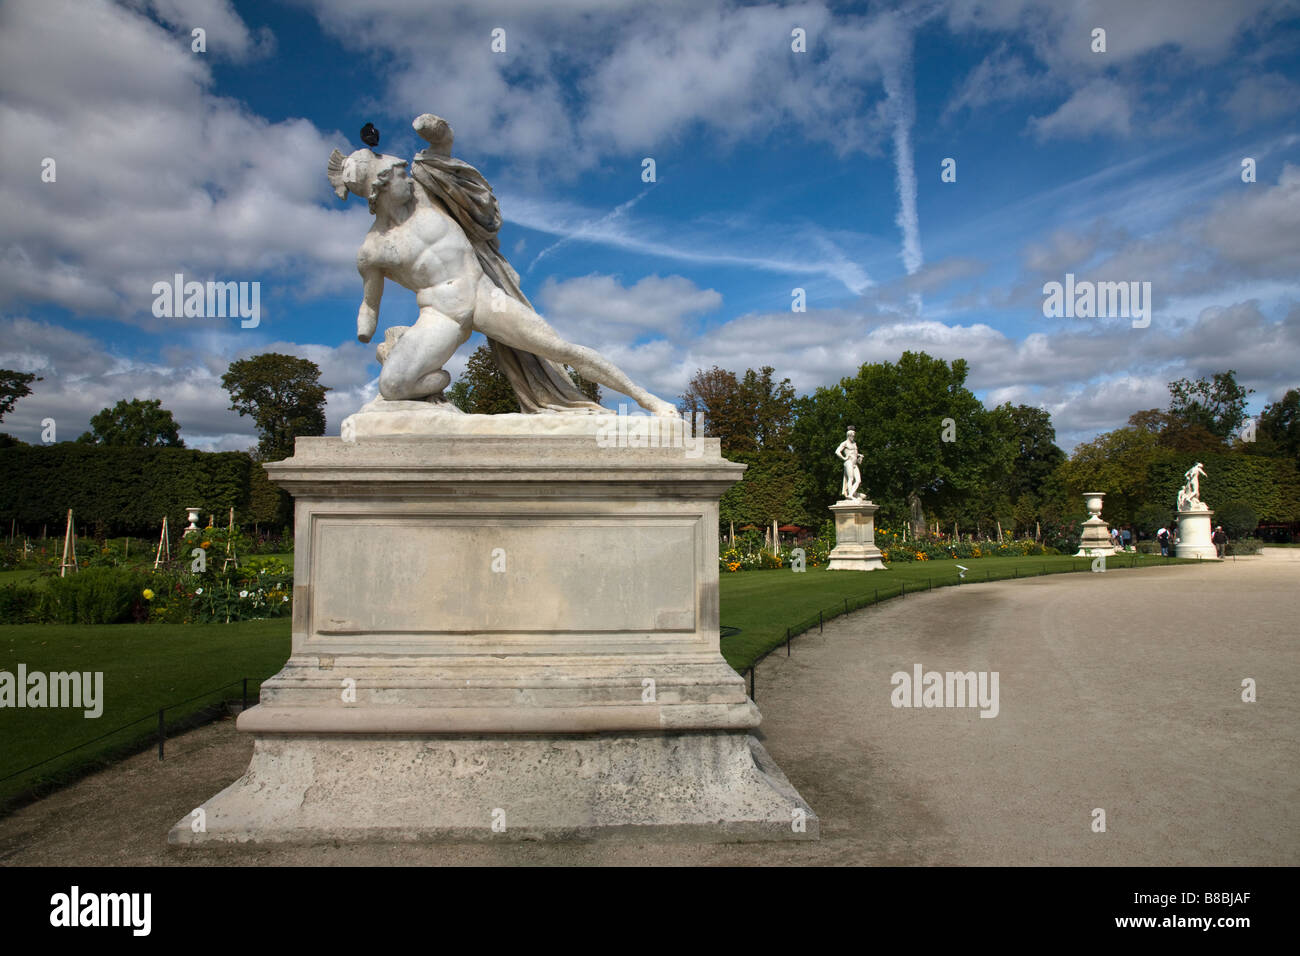 Ciel bleu dramatique derrière des sculptures dans le jardin des Tuileries jardin de sculptures à l'extérieur de monde célèbre musée d'art du Louvre Paris France pigeon est assis sur la tête de statue Banque D'Images